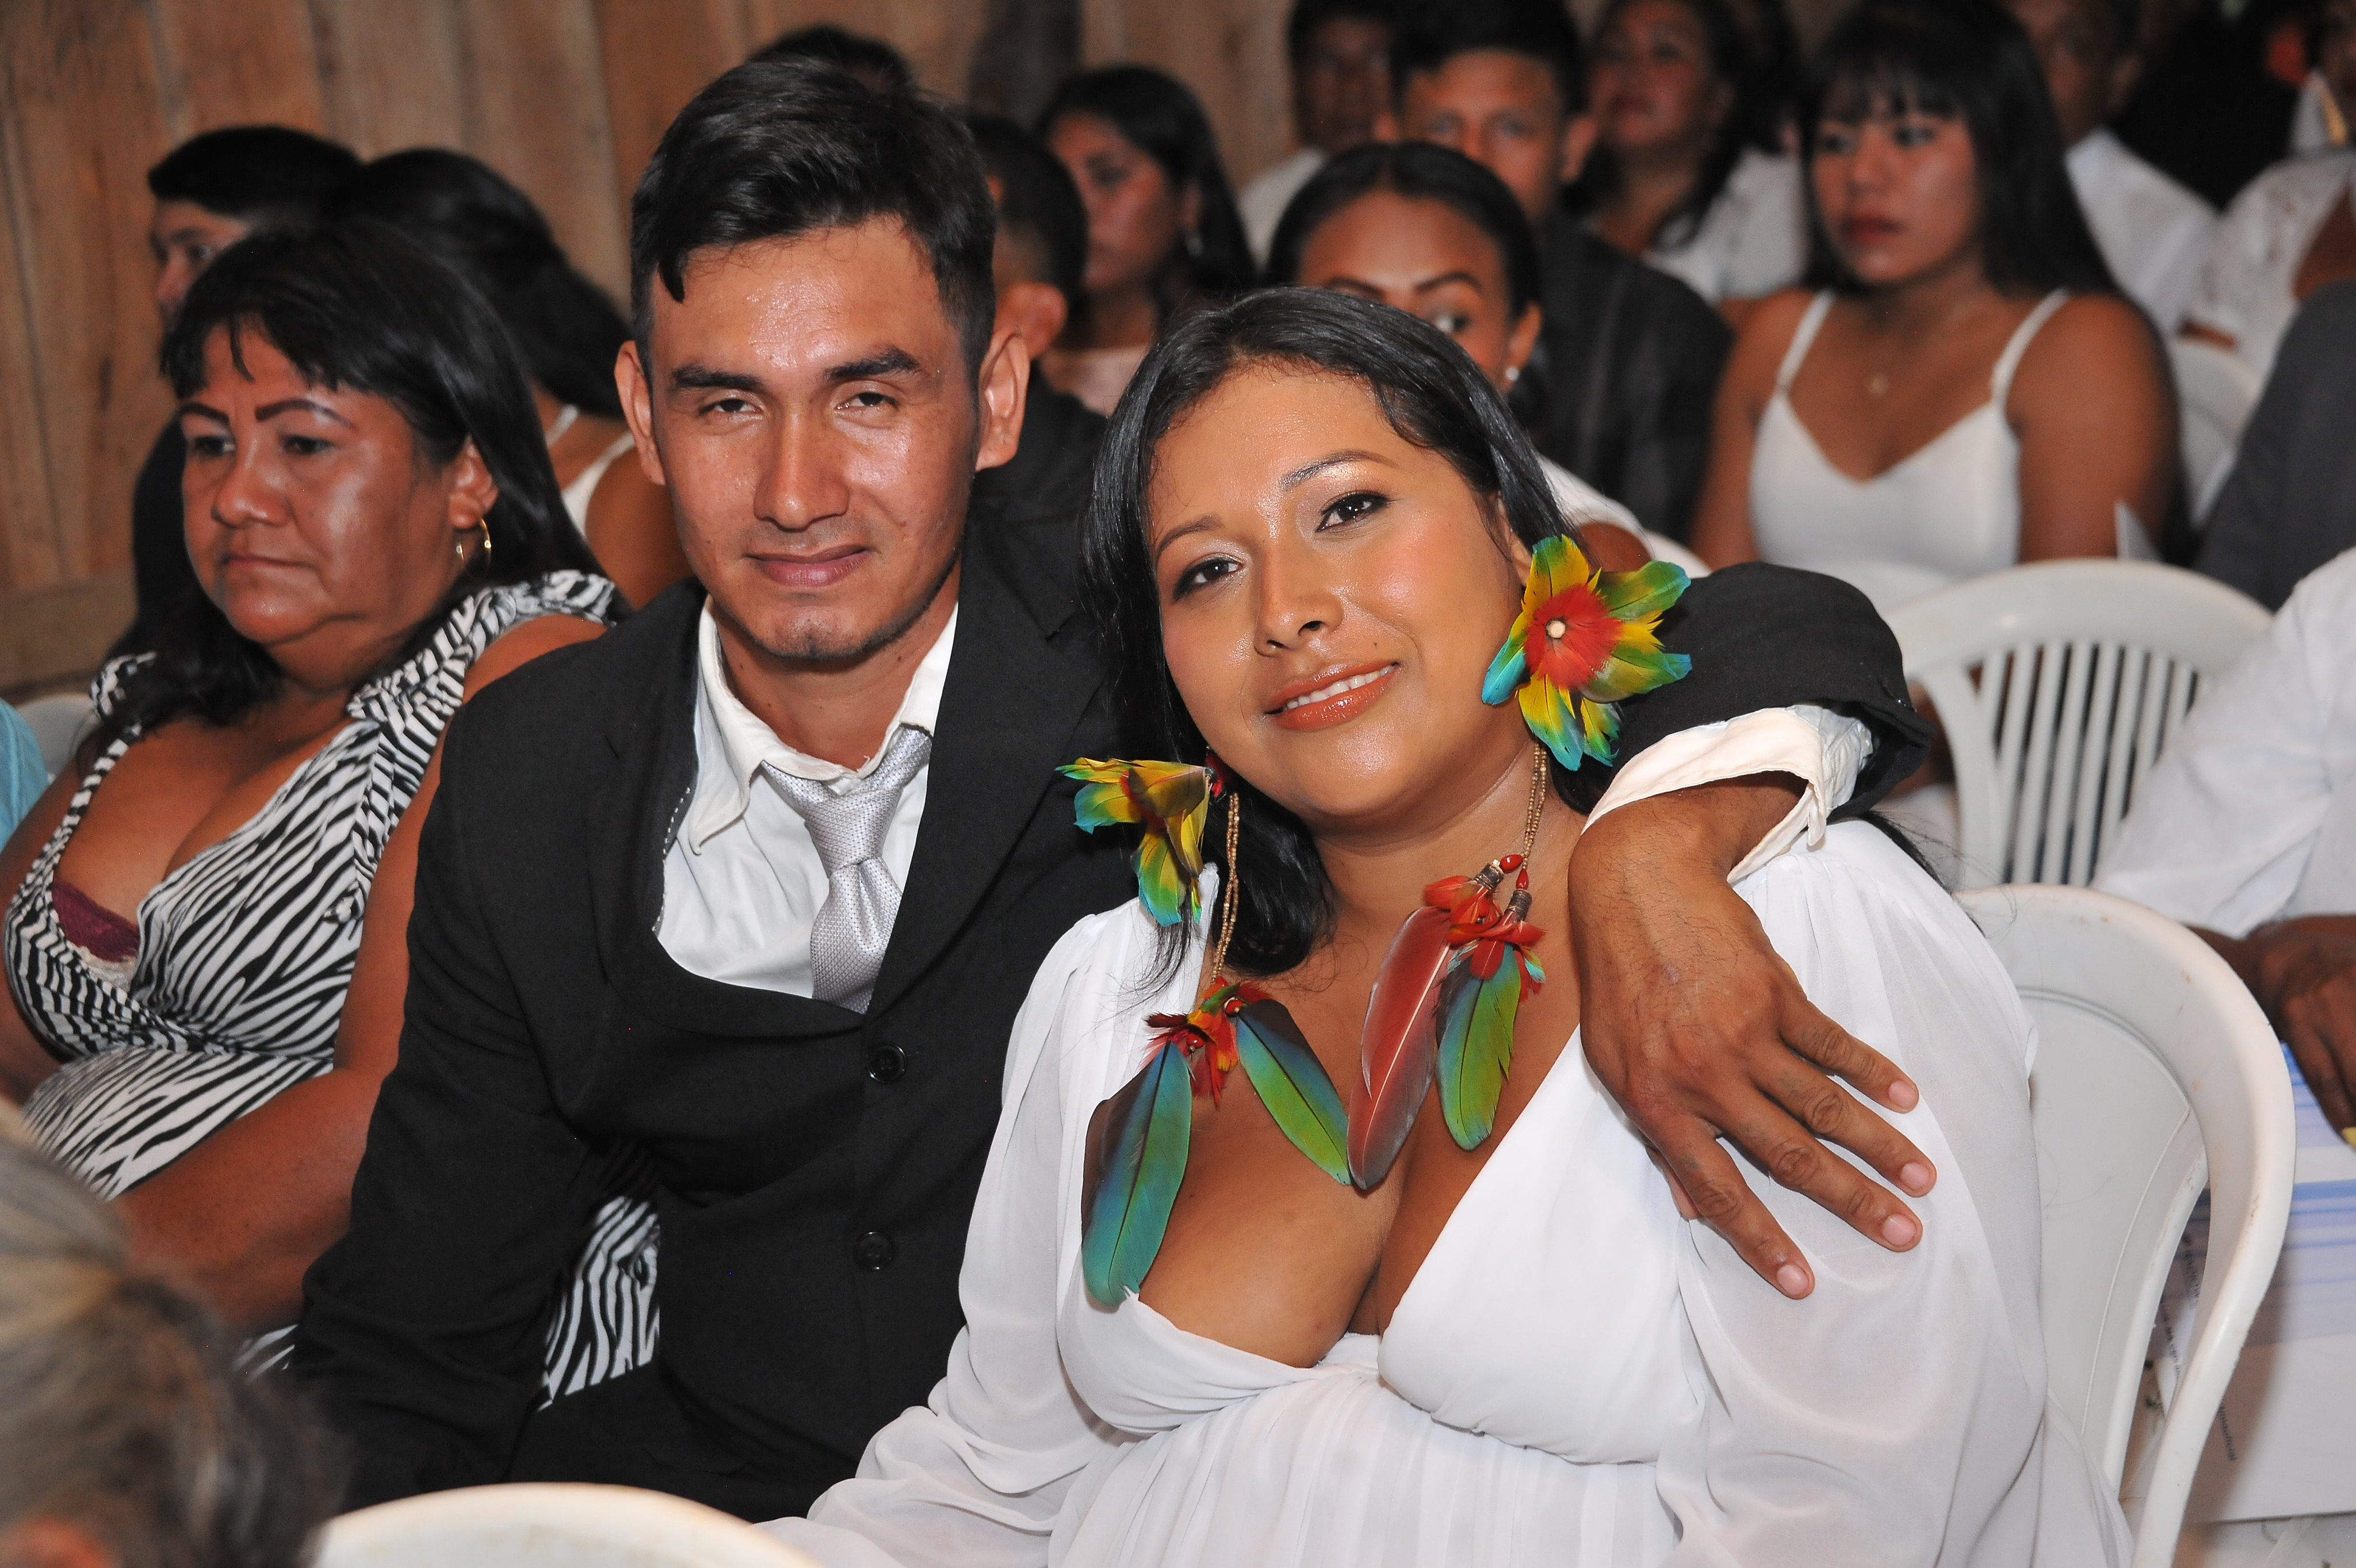 casal de jovens indígenas, ele de terno preto, ela de vestido branco e colar e brincos de penas coloridas.